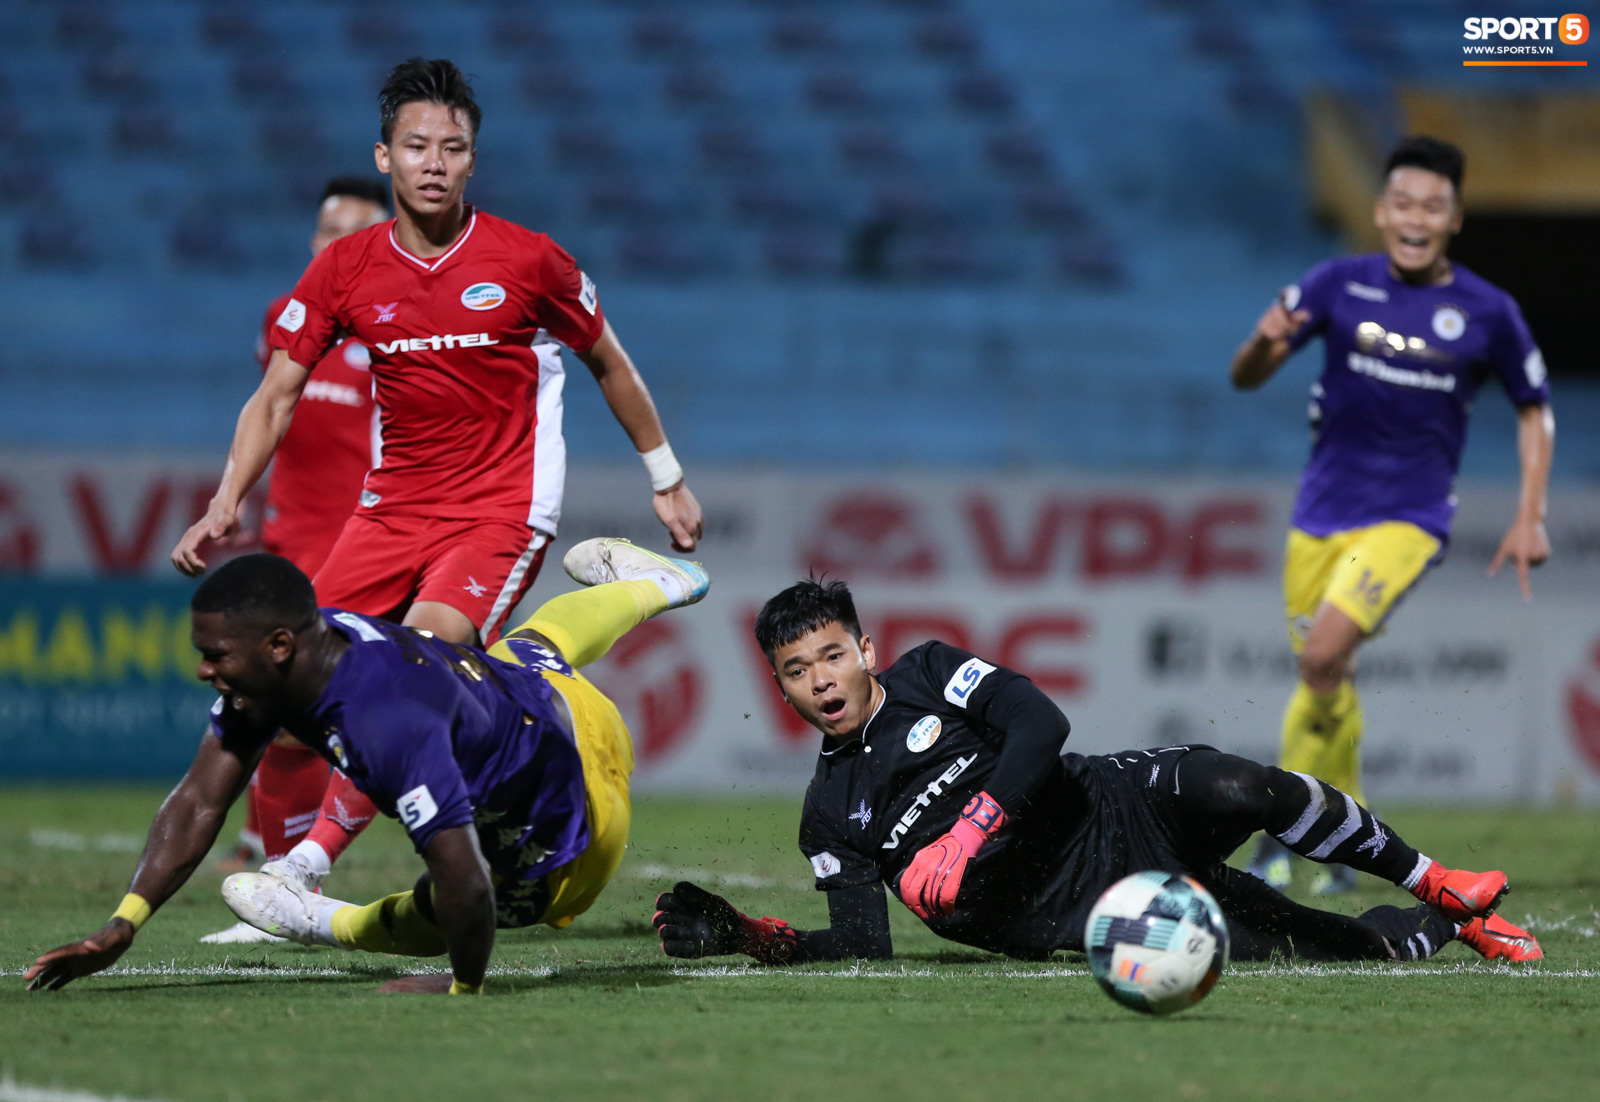 Quế Ngọc Hải nổi đoá, cùng Bùi Tiến Dũng mắng hội đồng cầu thủ Hà Nội FC - Ảnh 3.